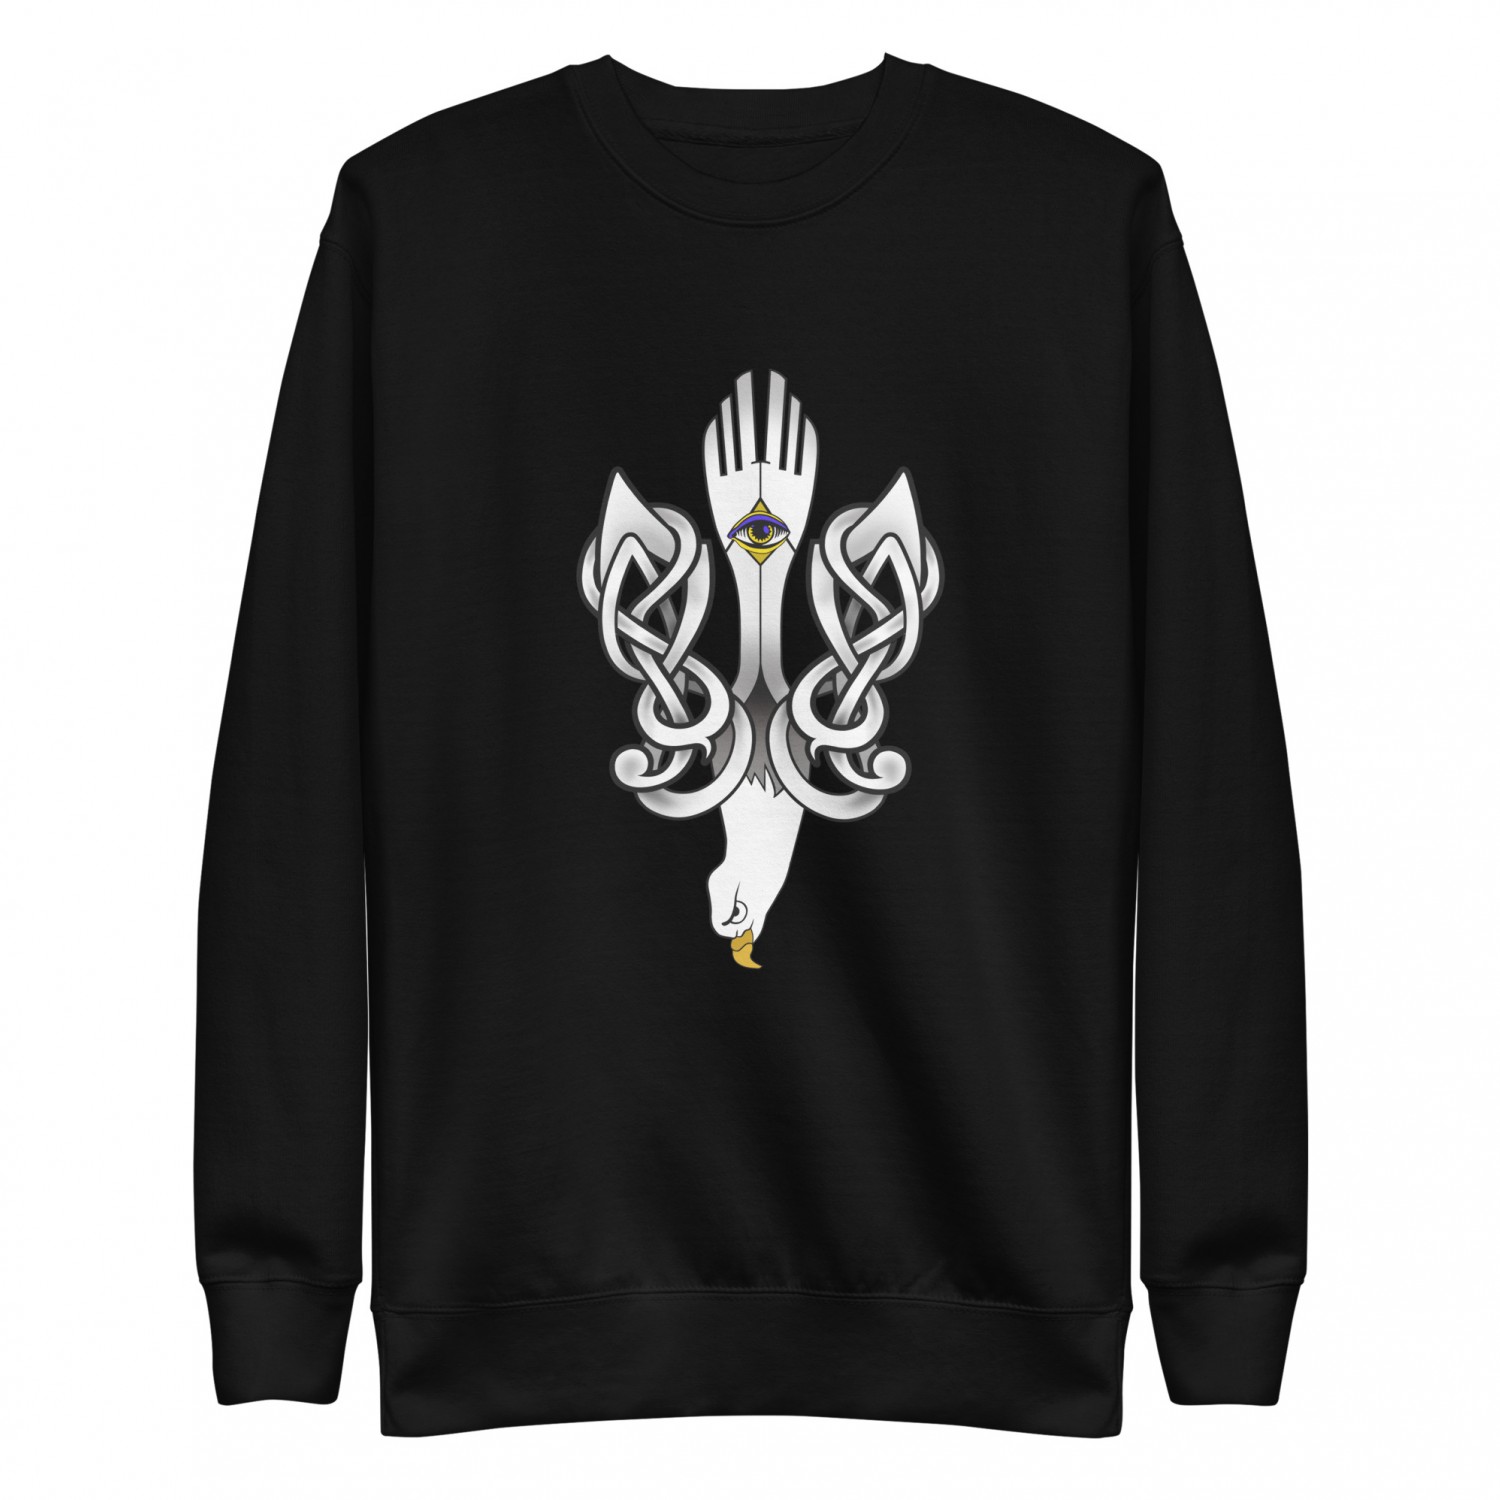 Buy a sweatshirt "UKRAINE"